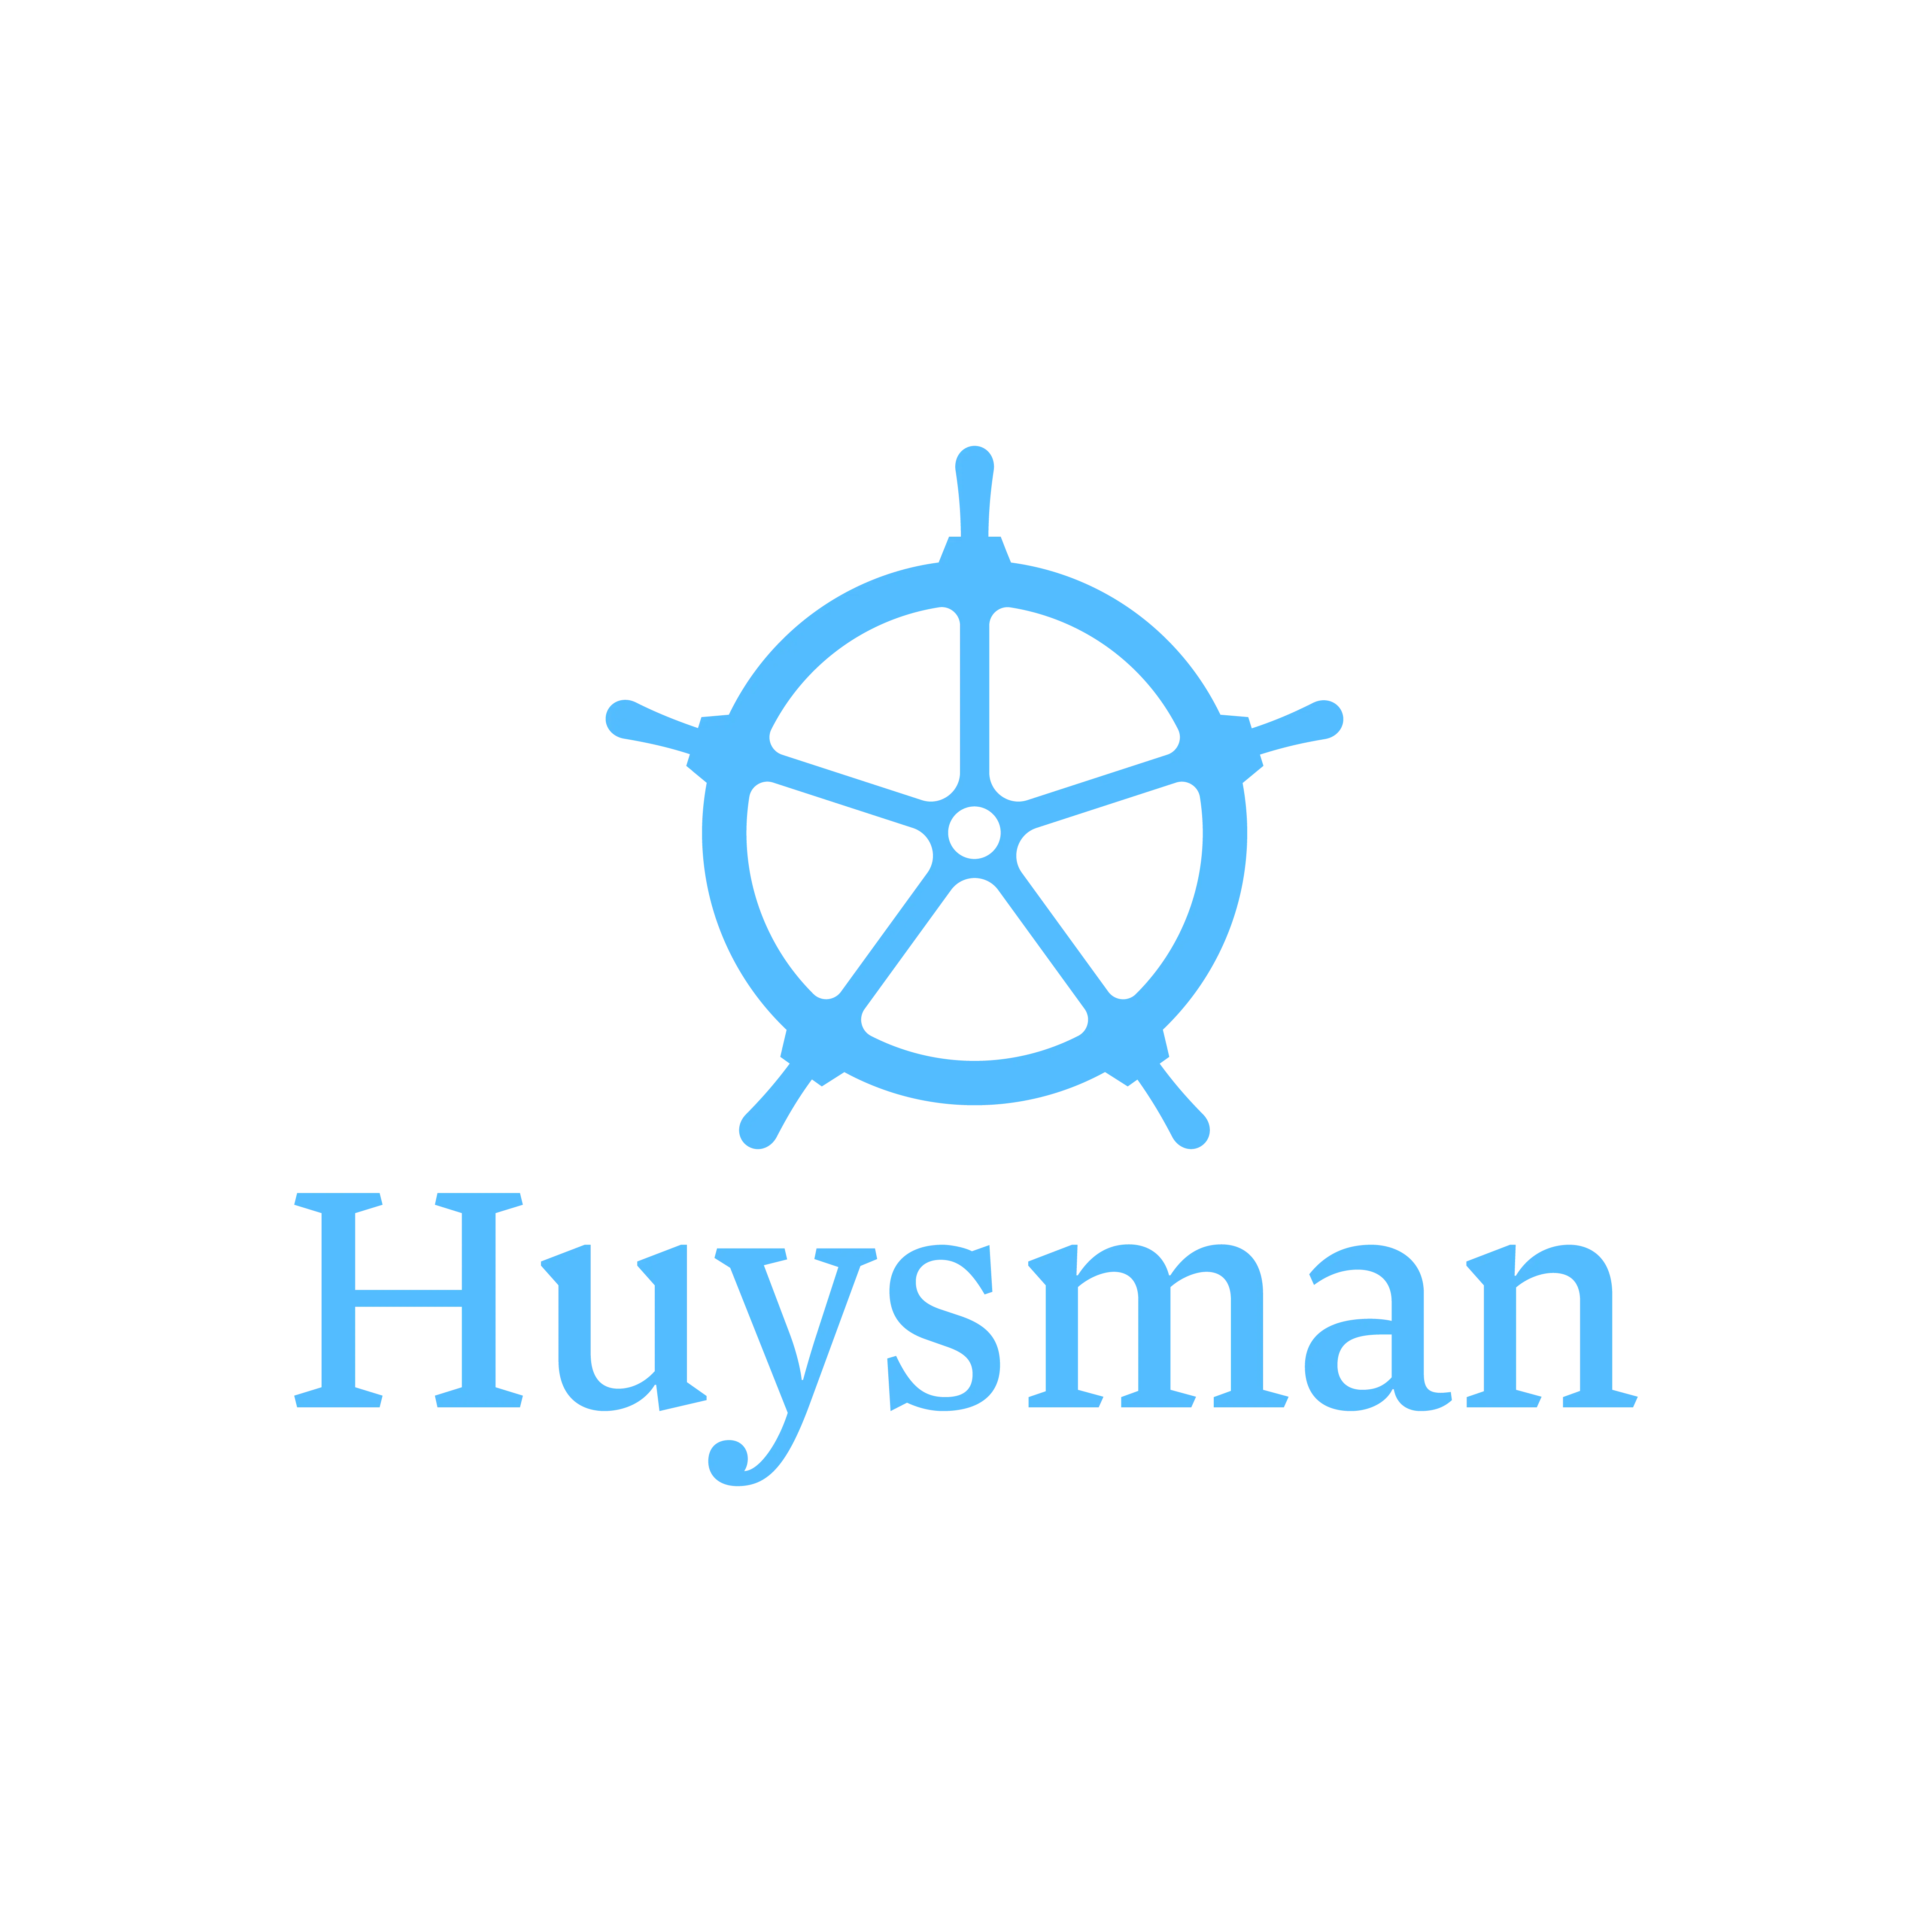 Huysman company logo